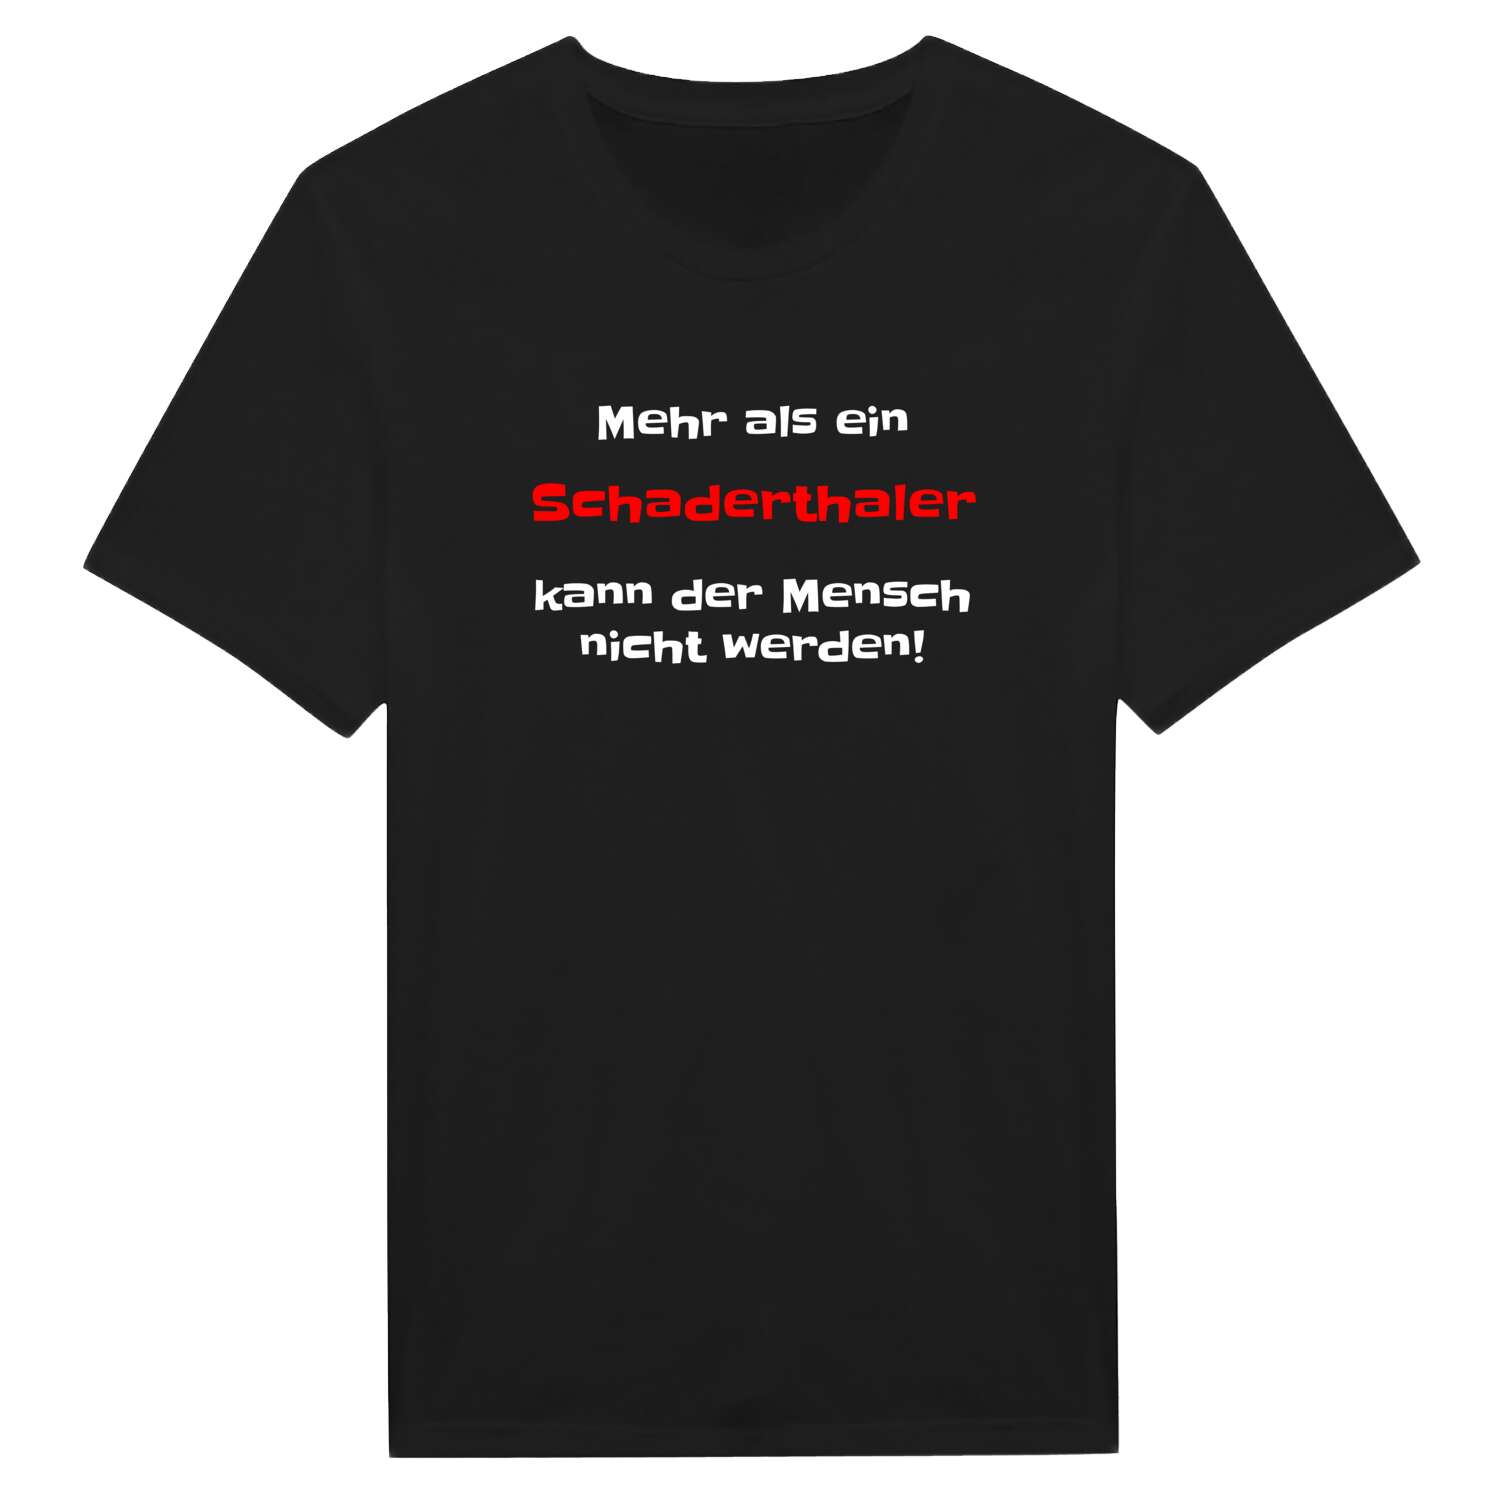 Schaderthal T-Shirt »Mehr als ein«